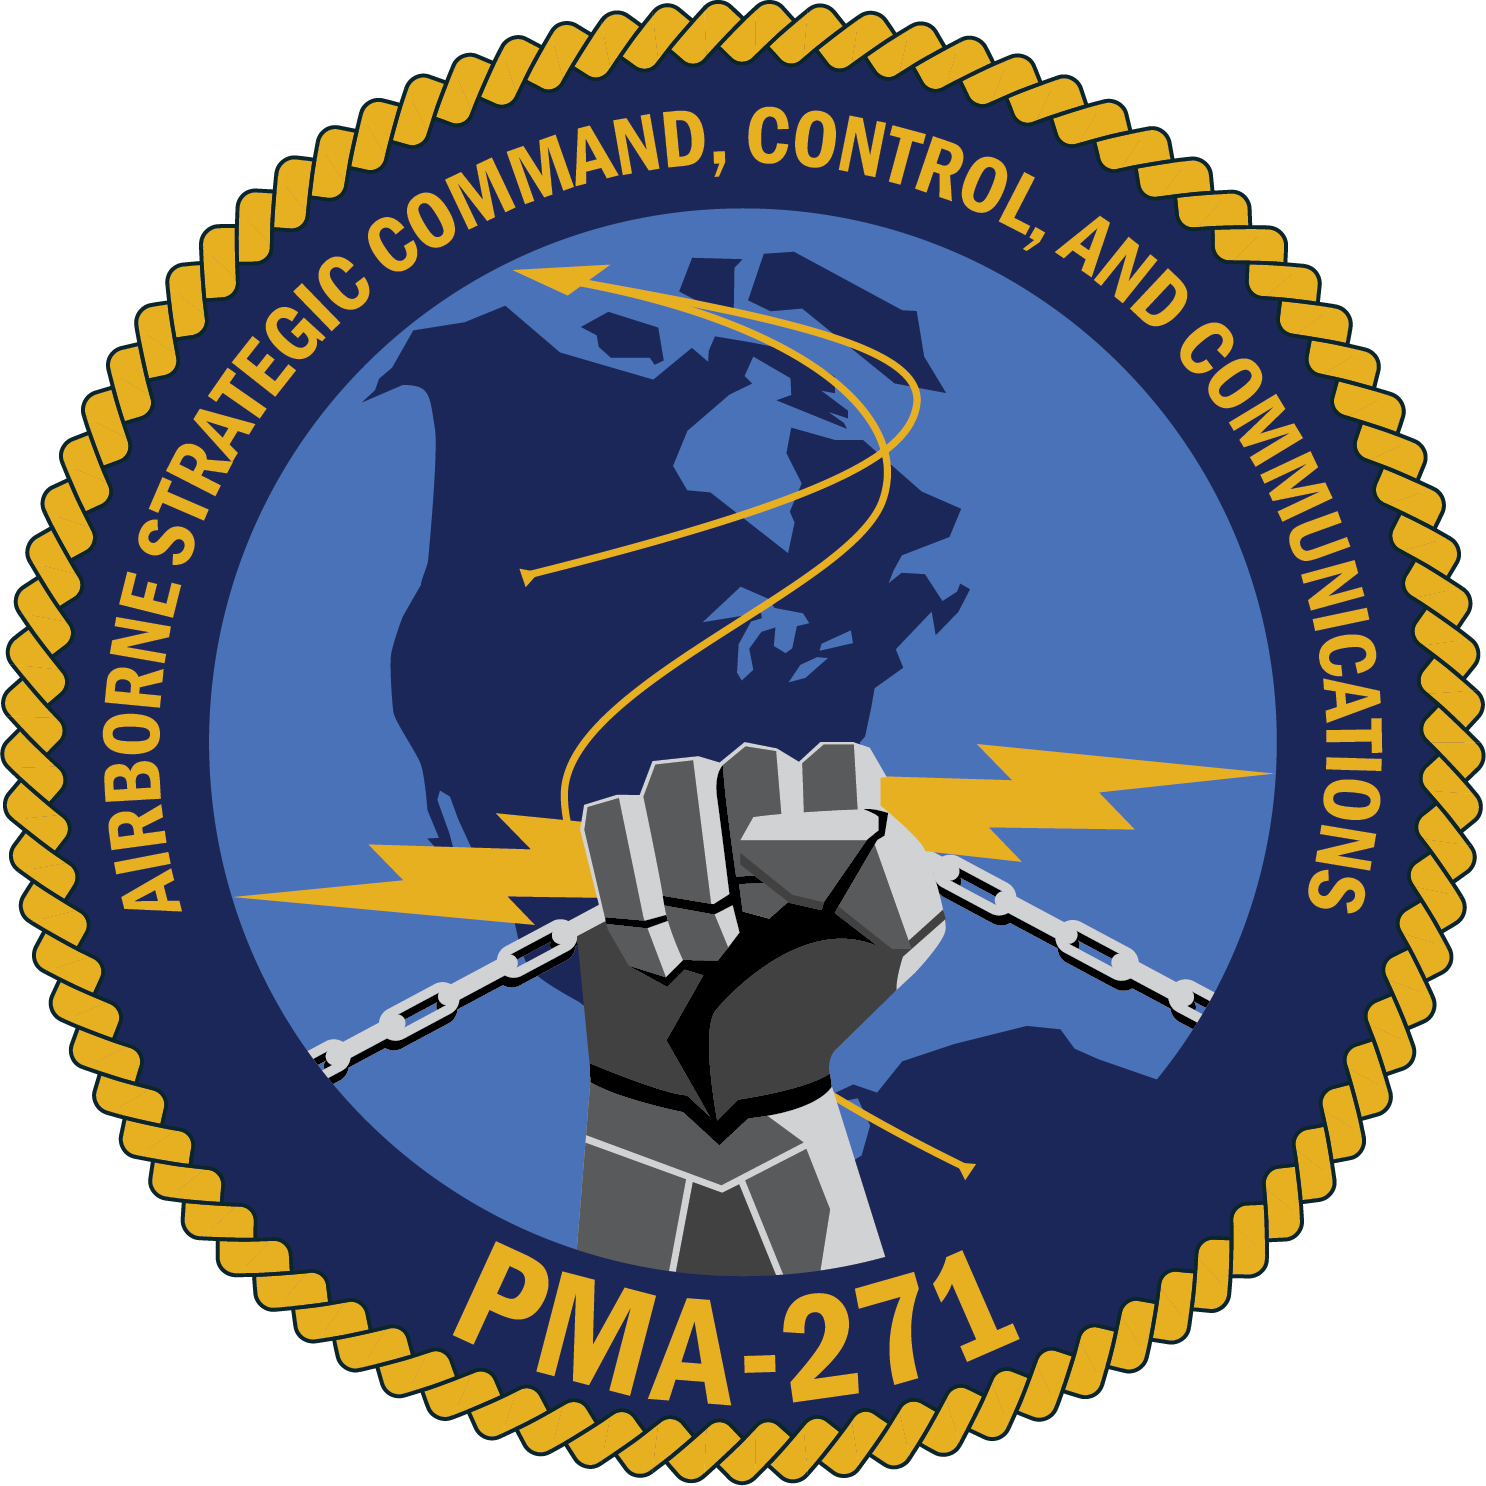 PMA-271 logo